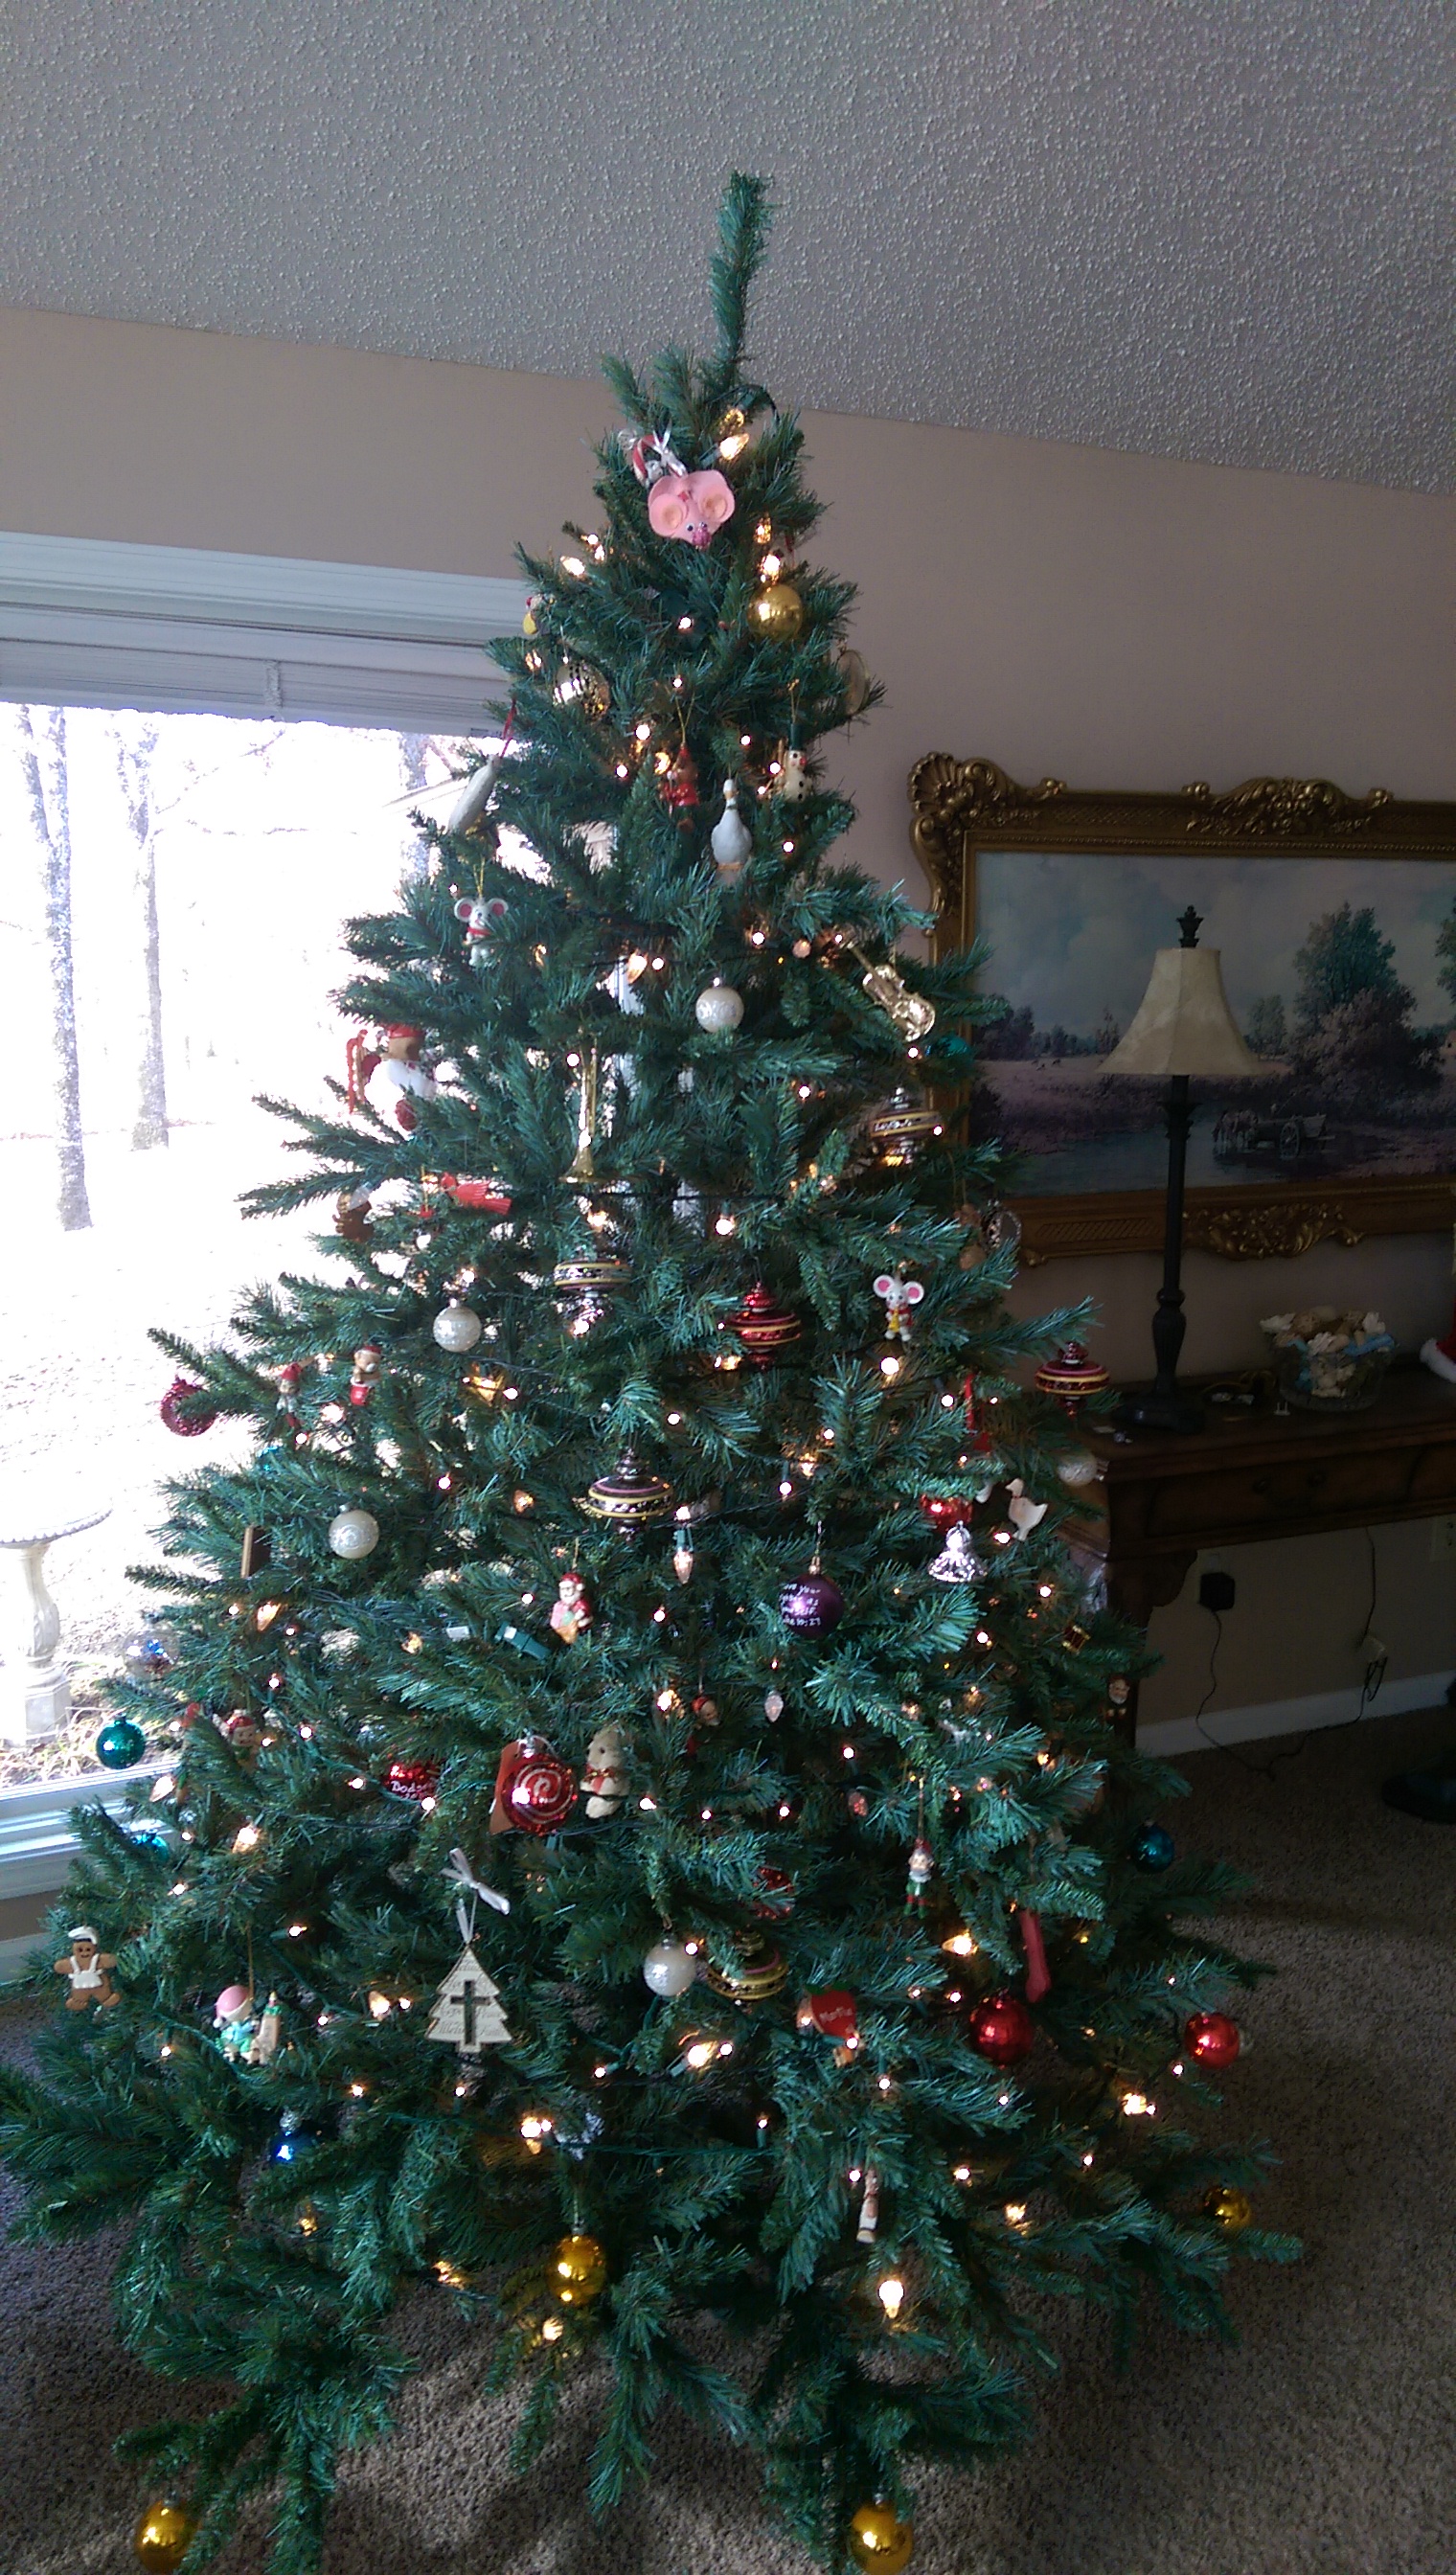 David 爷爷奶奶家的圣诞树完成品